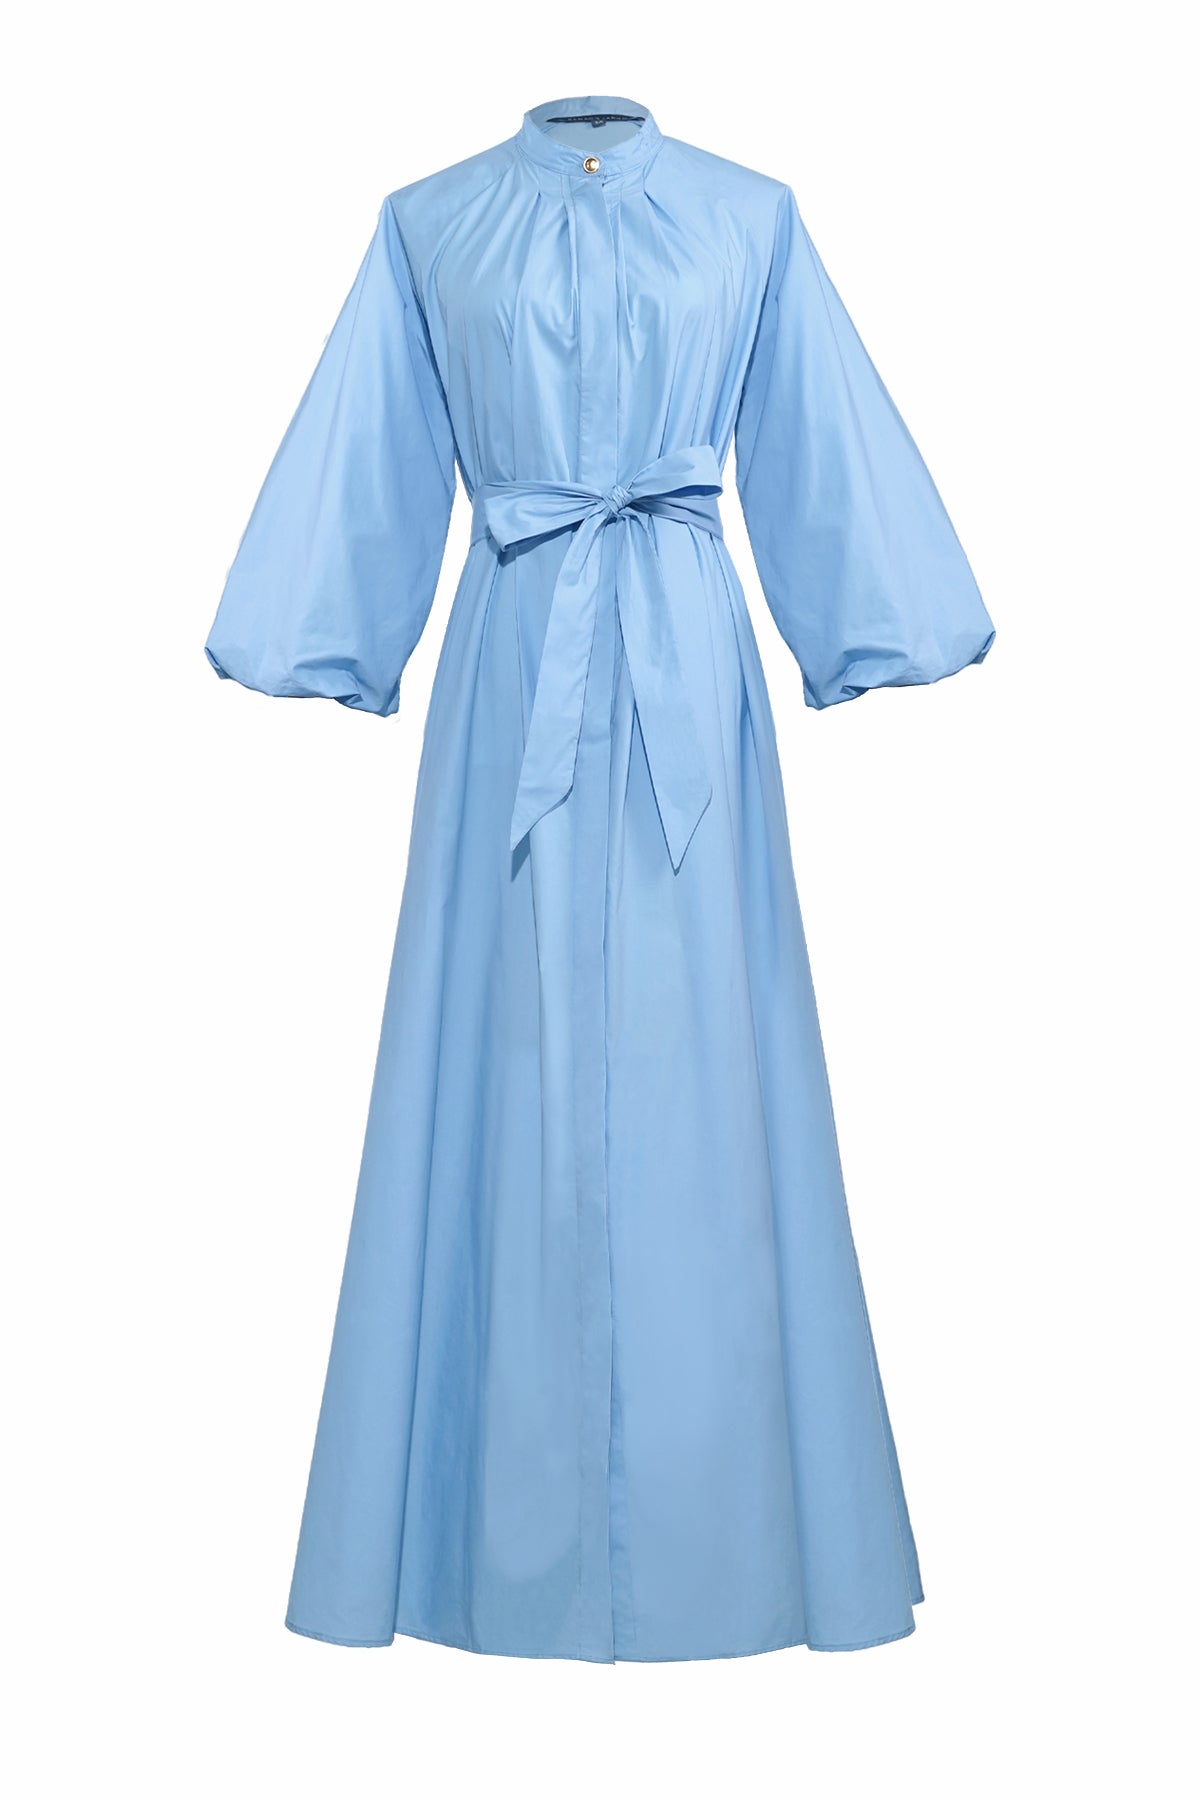 Disty Shirt Dress - Soft Blue